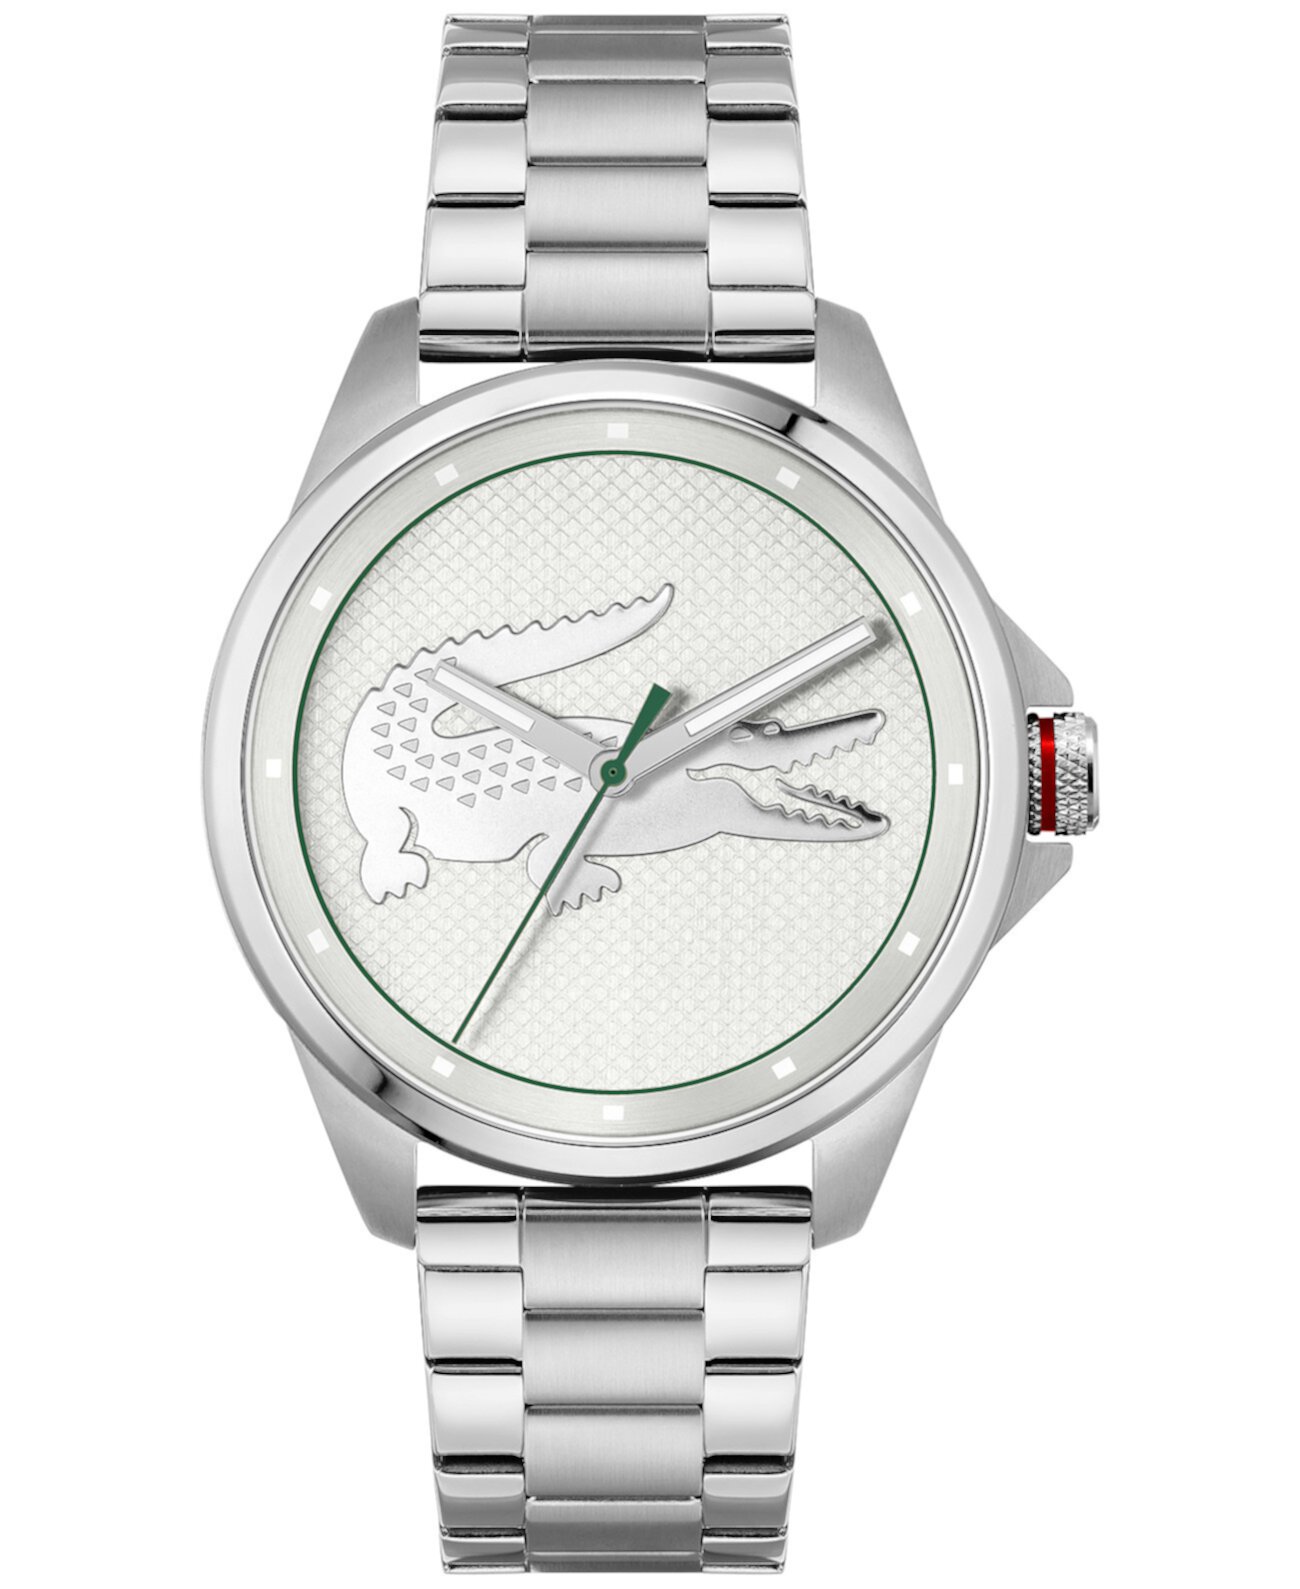 Мужские наручные часы из нержавеющей стали с браслетом из крокодиловой кожи, ограниченная серия, 43 мм Lacoste